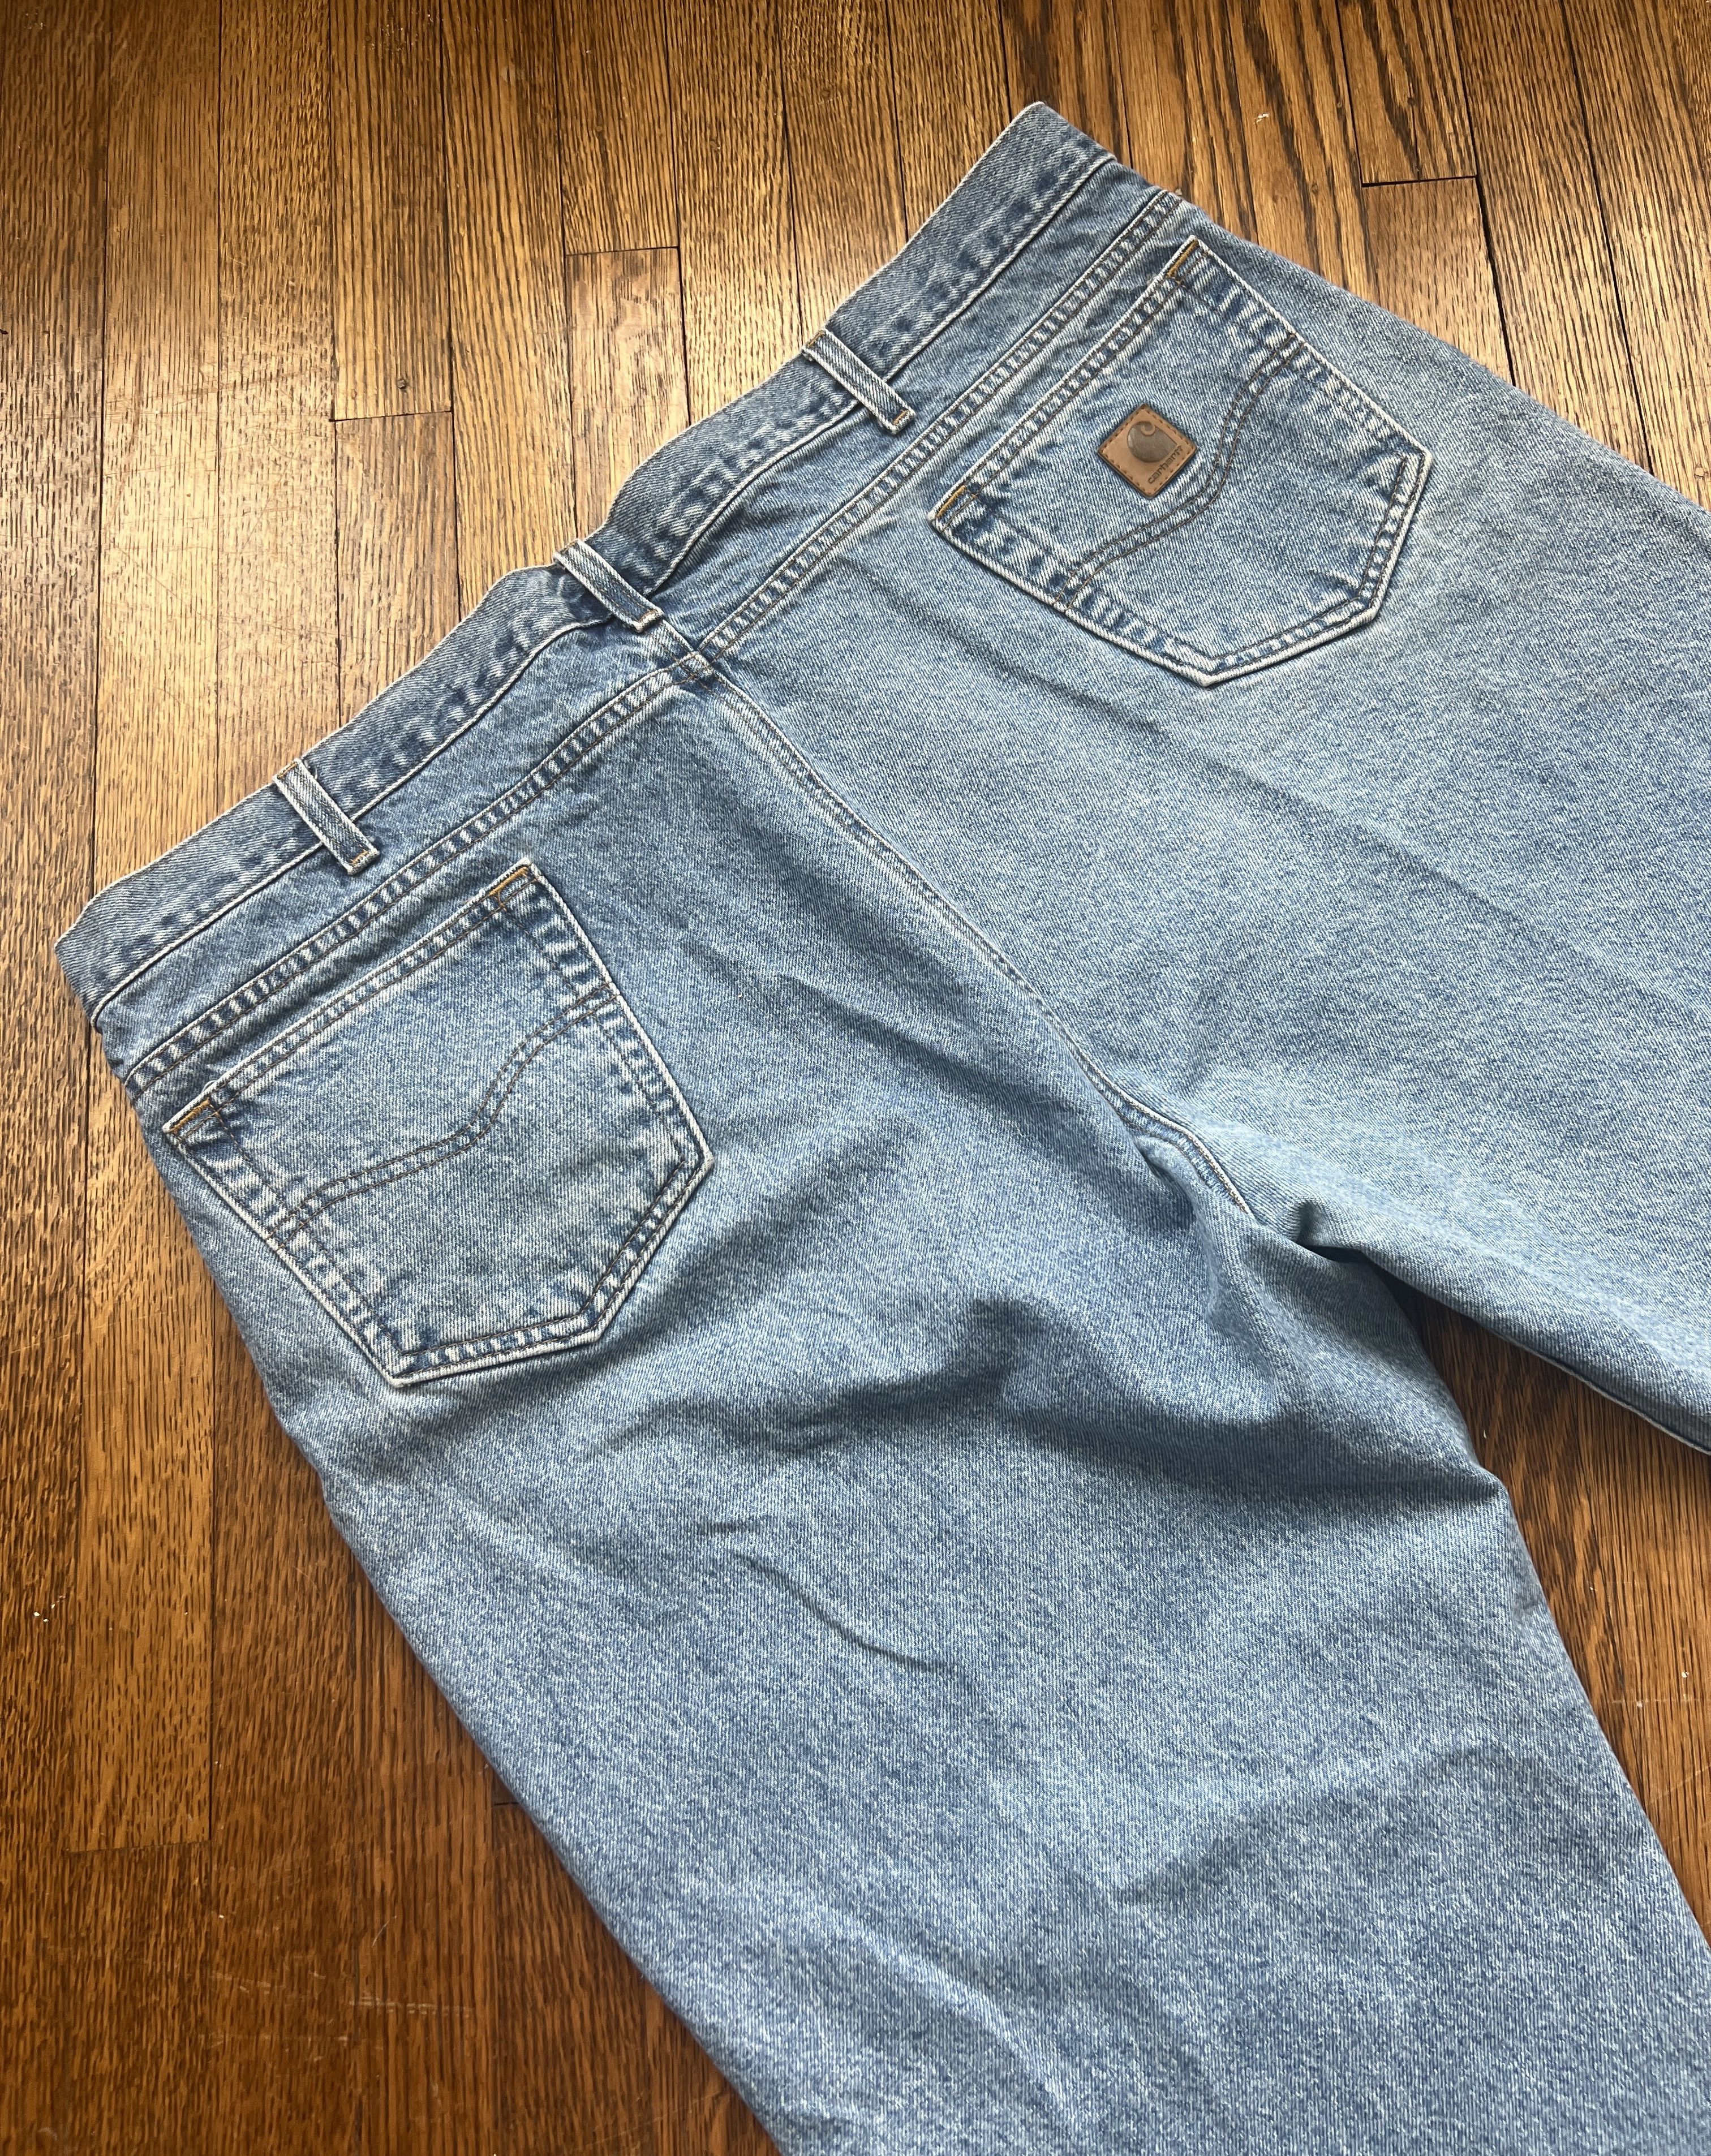 Carhartt Jeans Mens Size 40X30 Light Wash Blue Denim Jean B18 DST Original  Fit